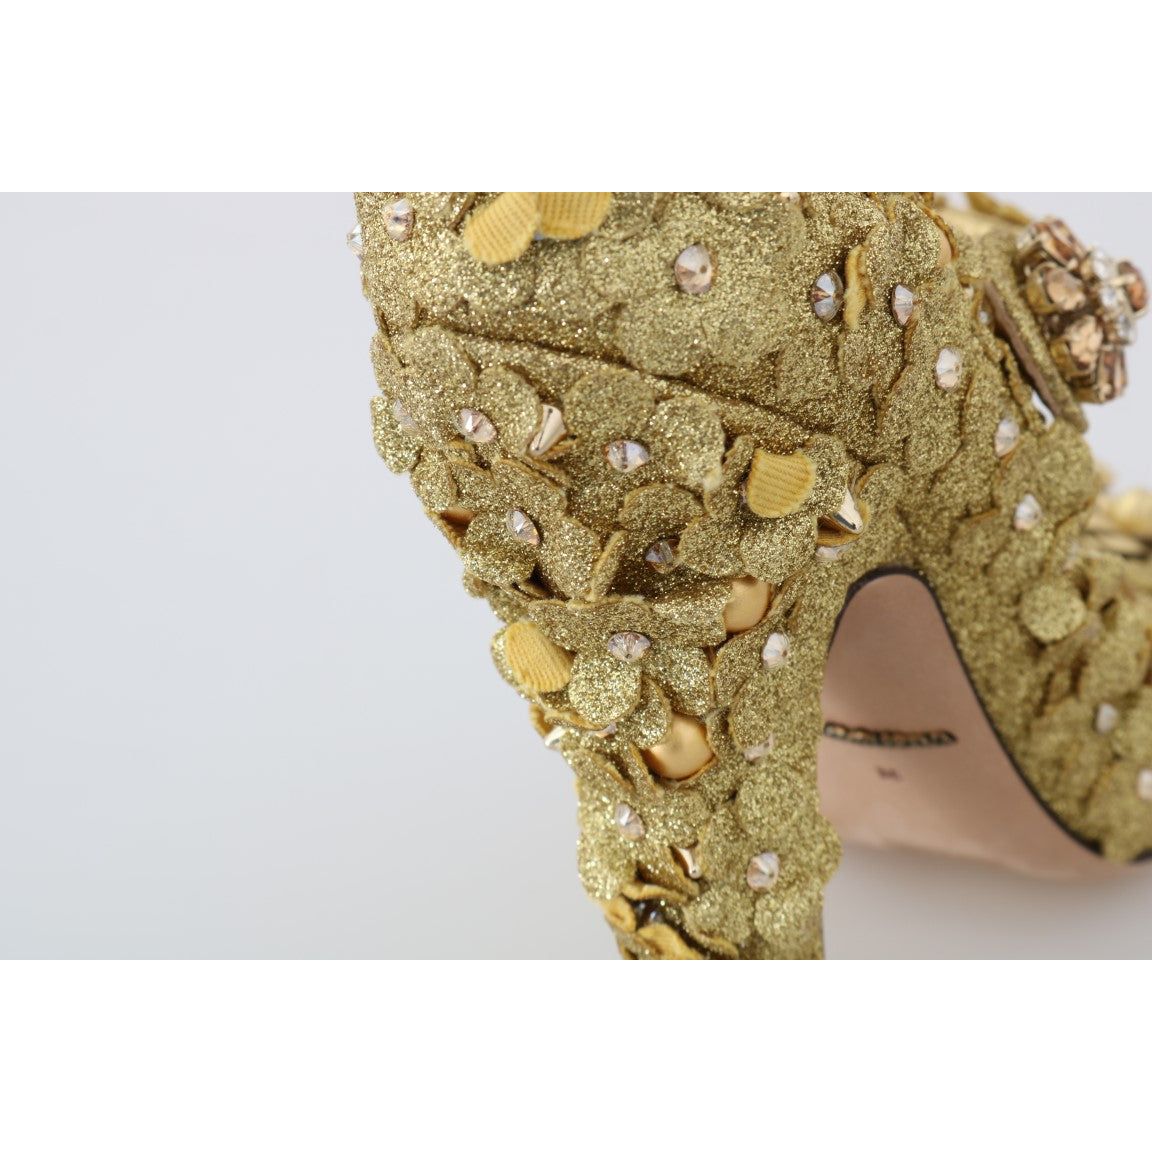 Dolce & Gabbana Gold Floral Crystal Embellished Pumps gold-floral-crystal-mary-janes-pumps